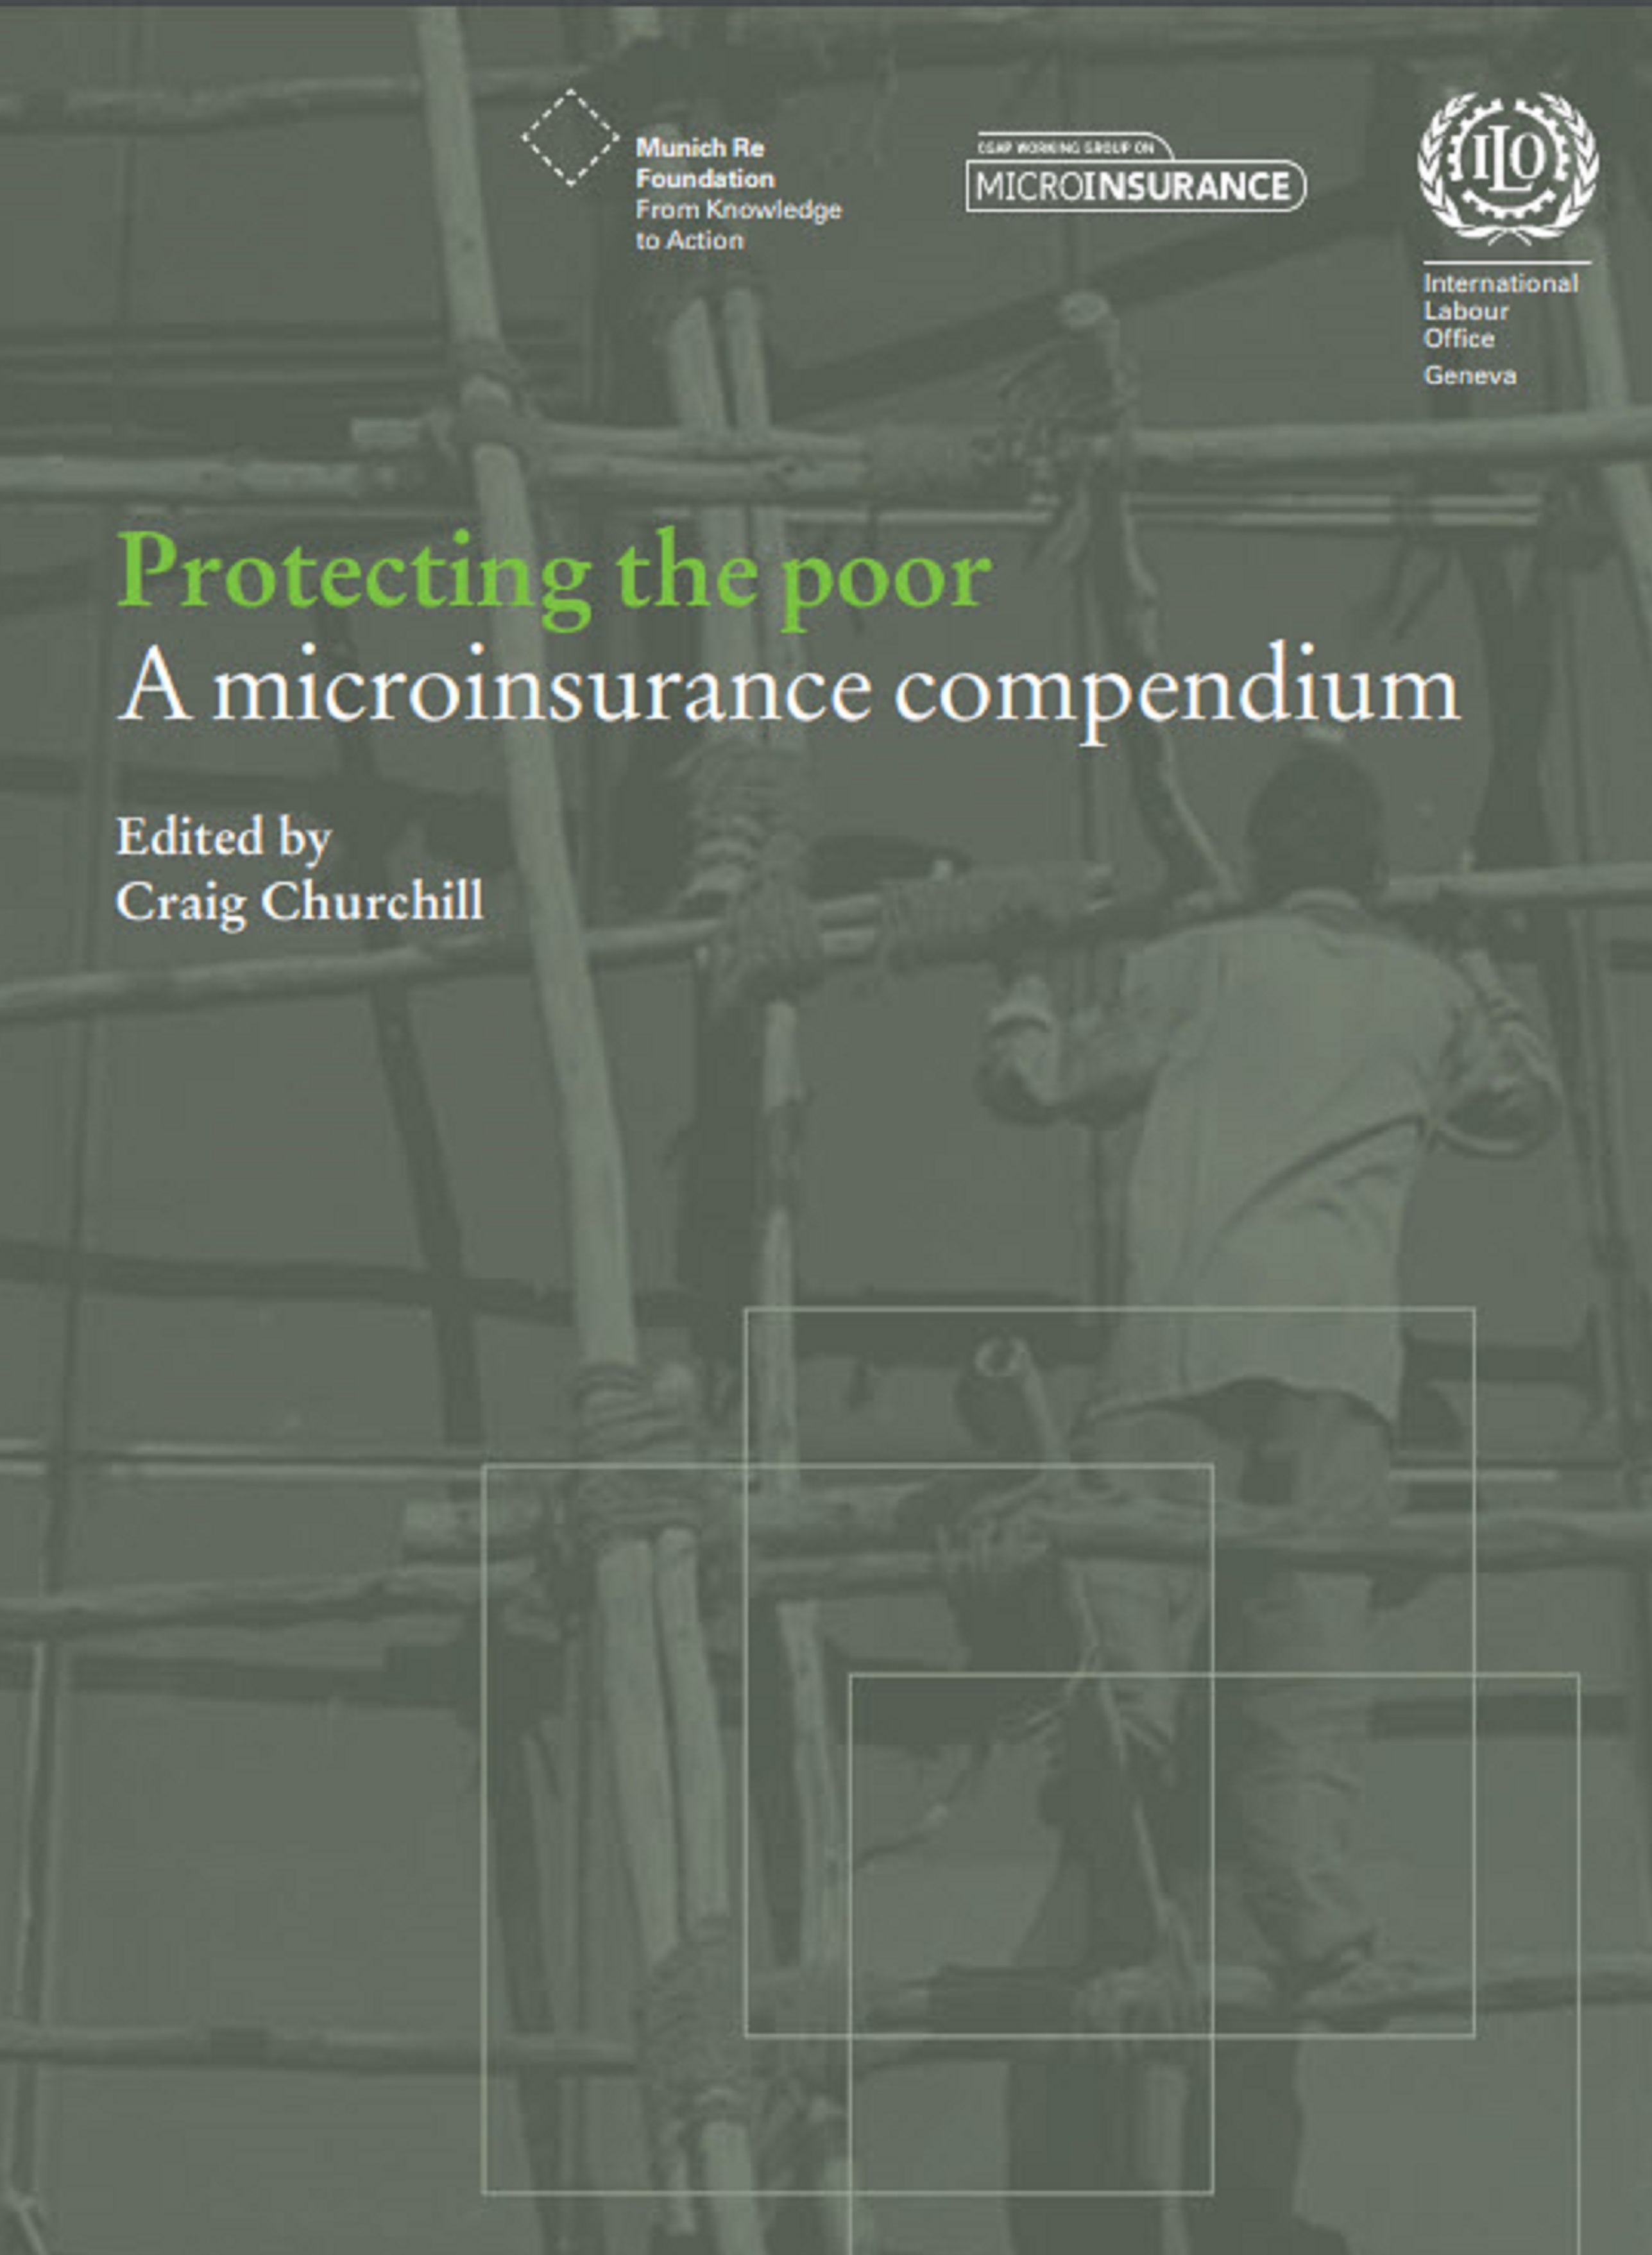 2006_Microinsurance_compendium